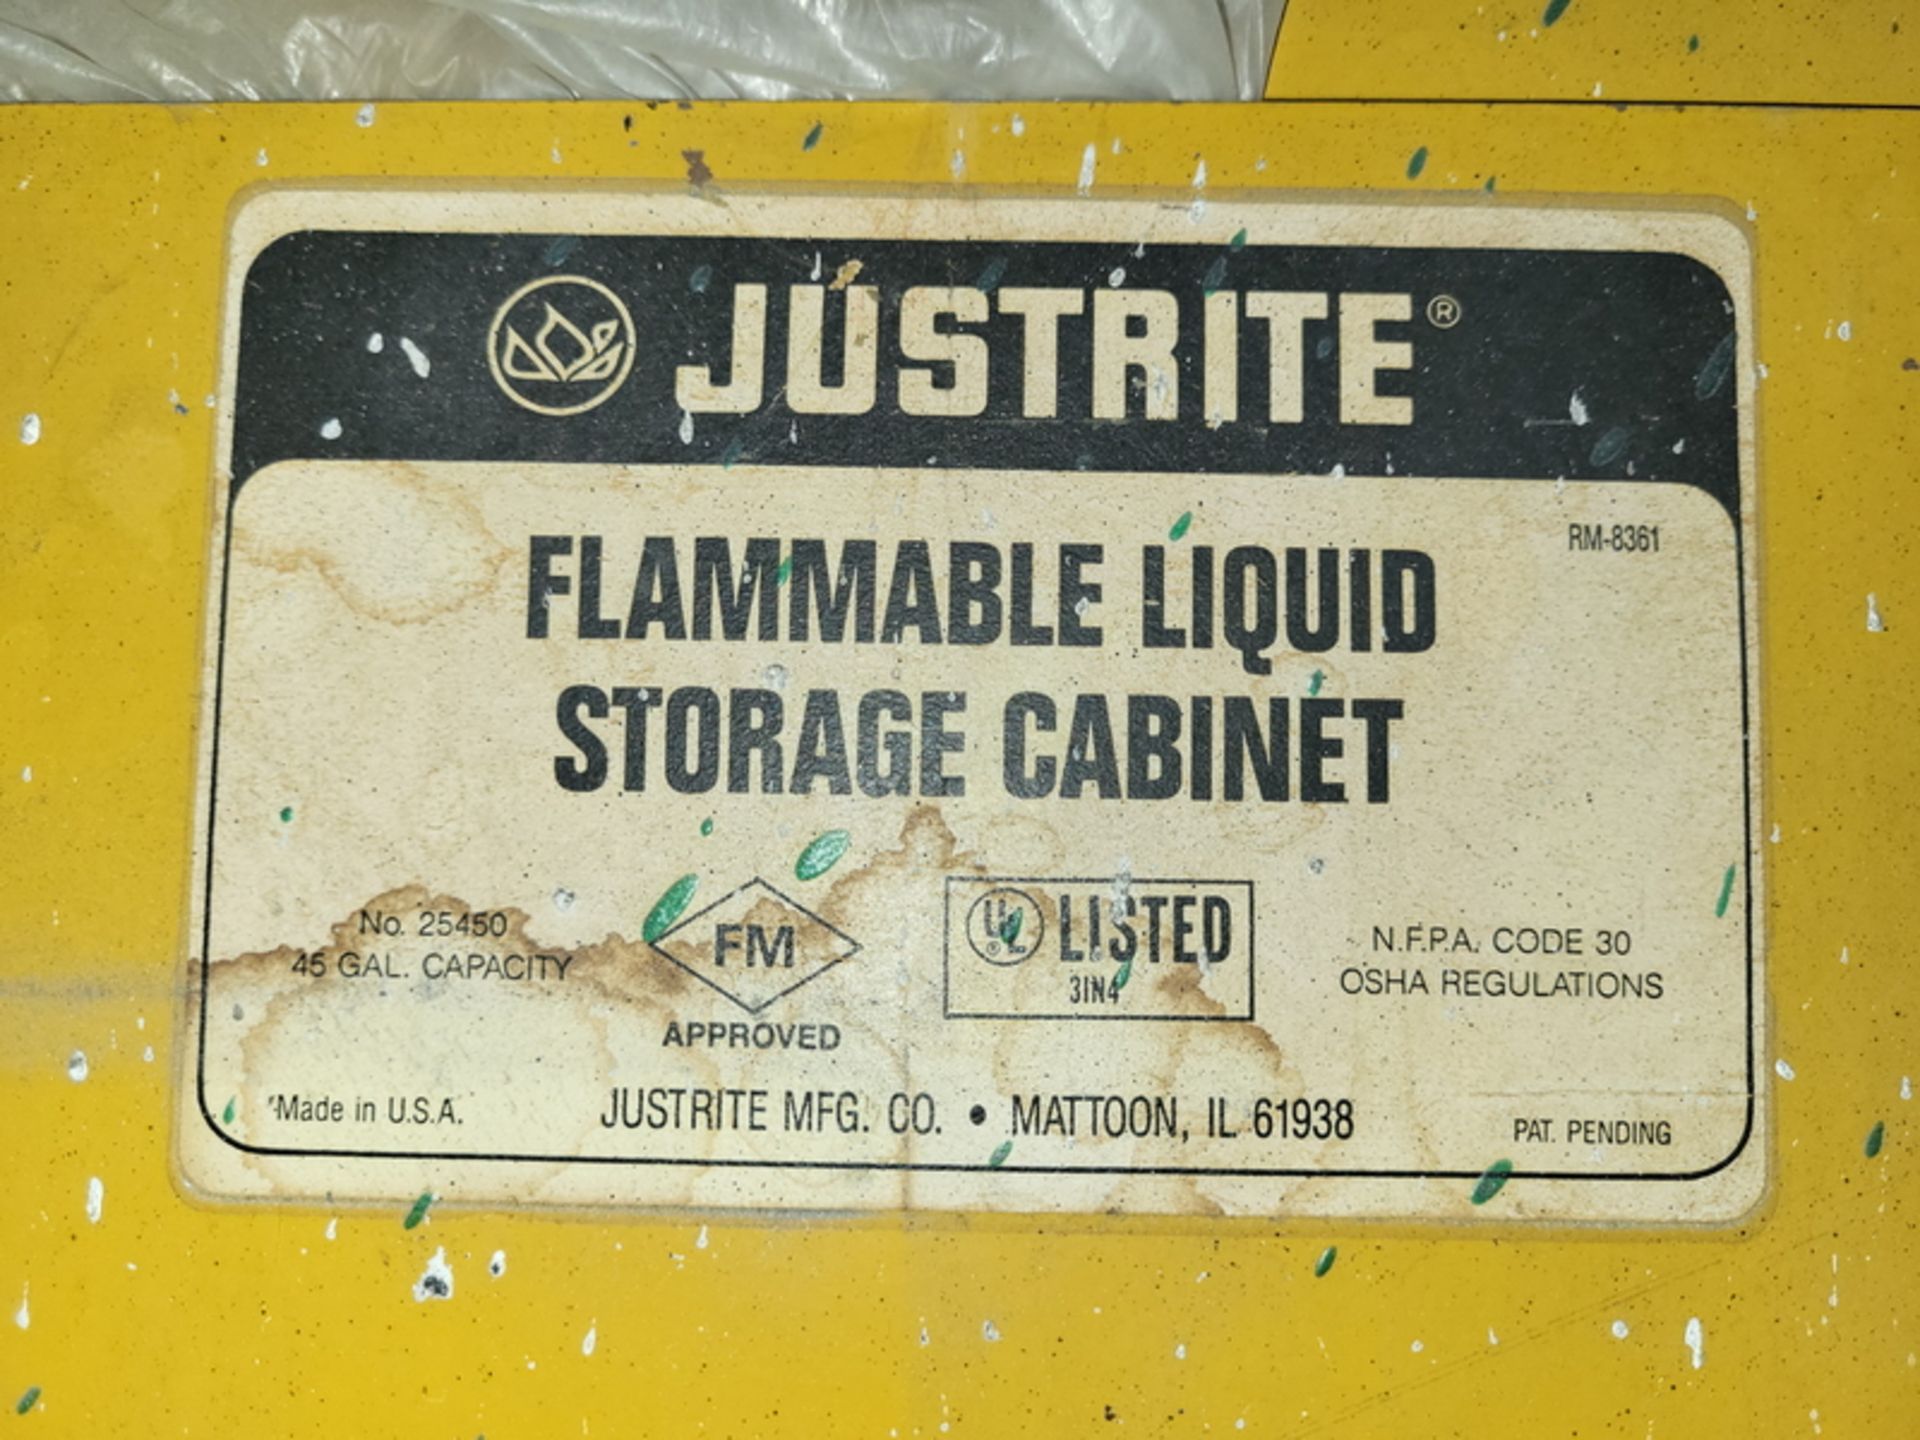 Justrite 45-Gallon Cap. Model 25450 2-Door Flammable Liquid Storage Cabinet - Image 2 of 3